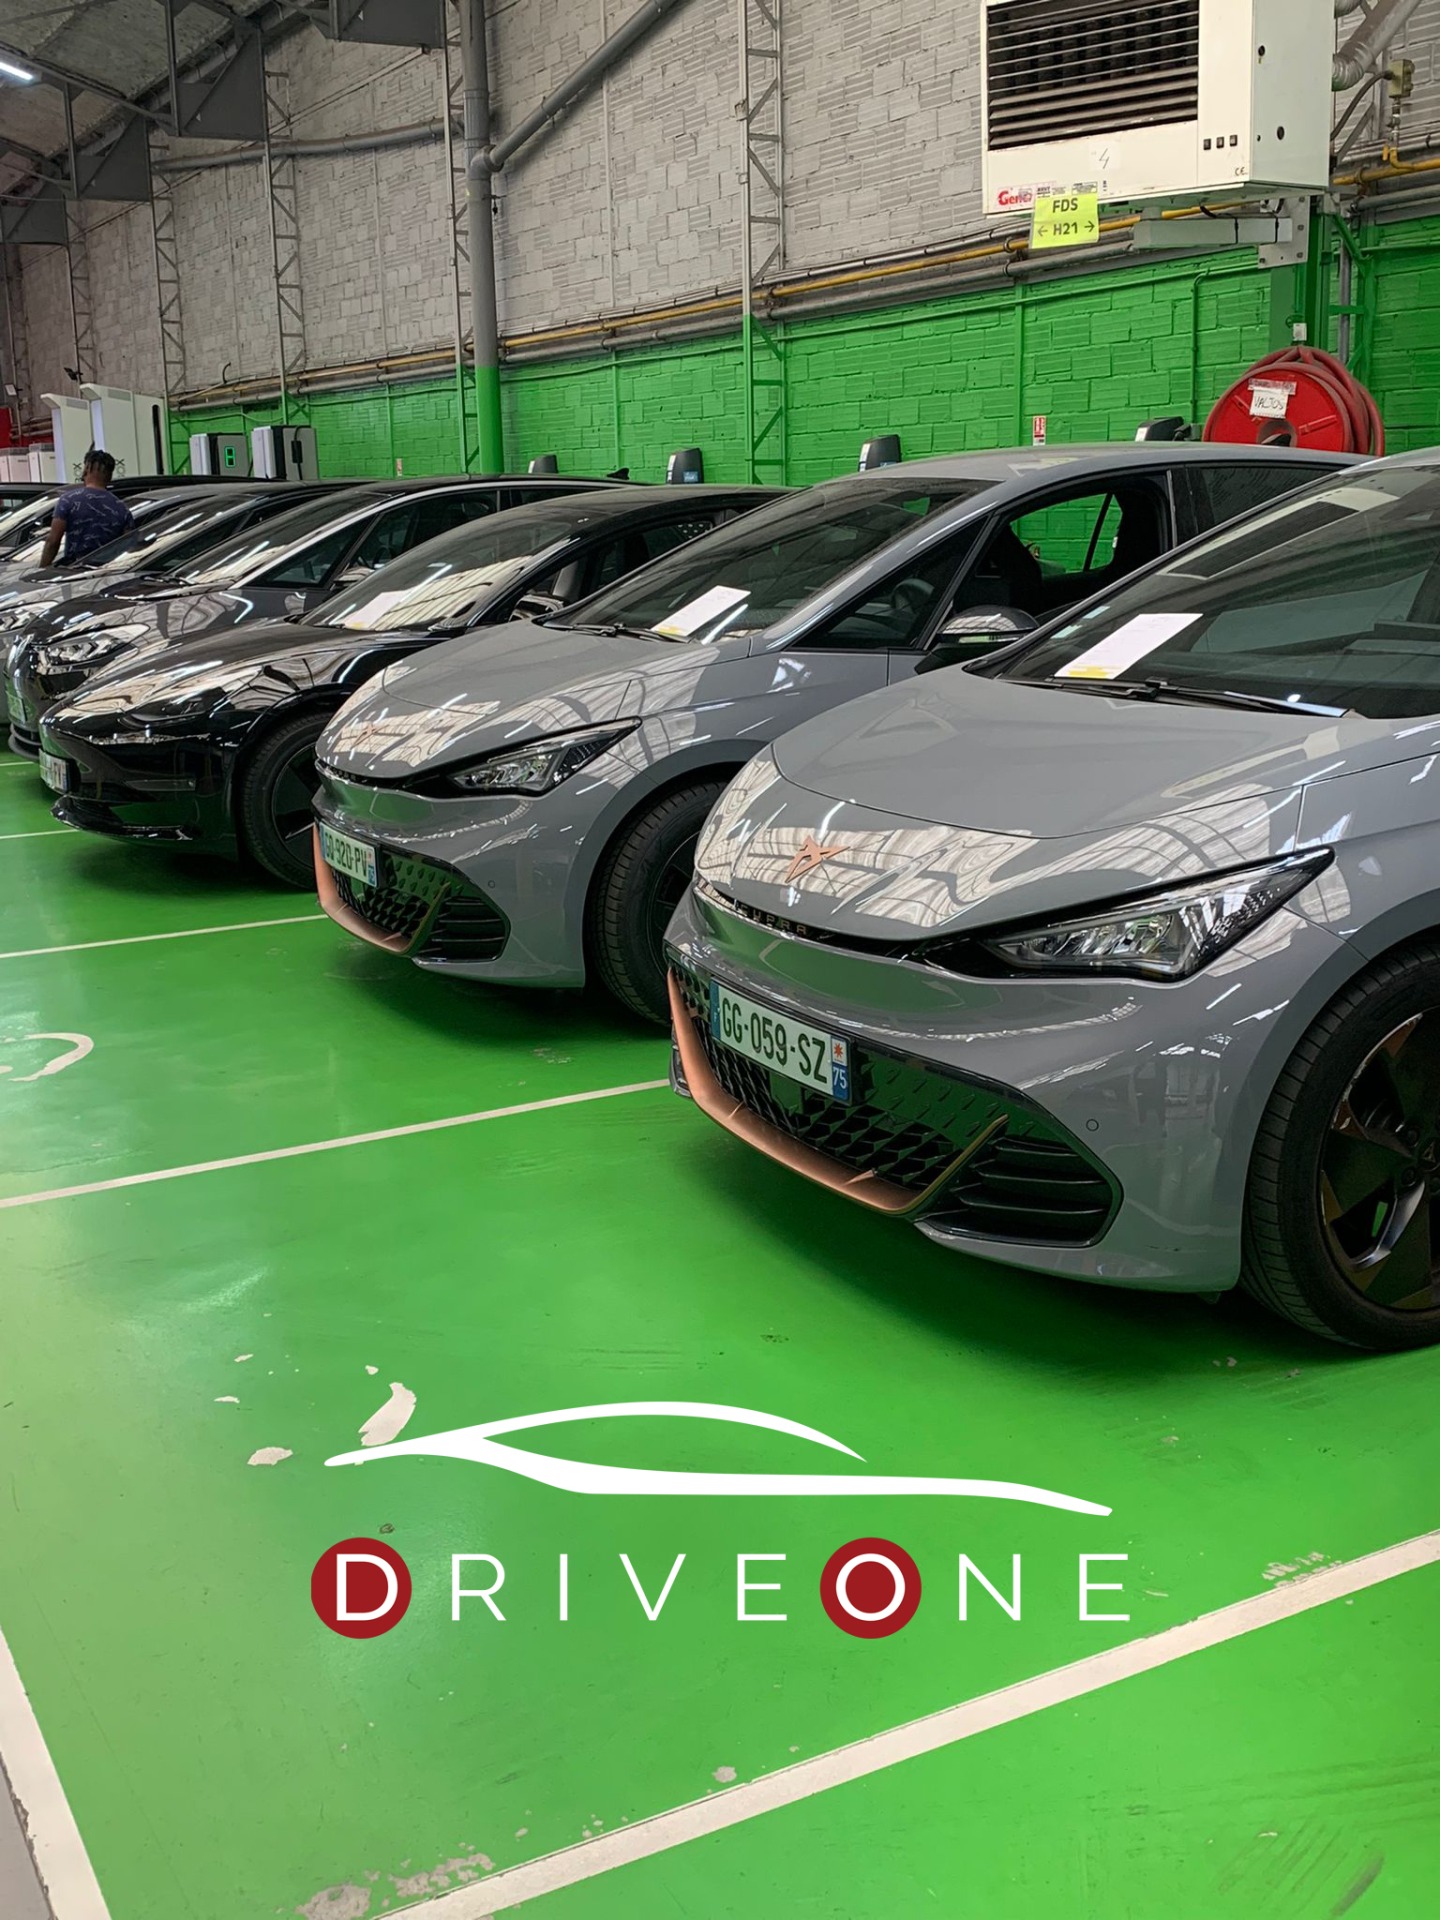 Drive One : la révolution VTC électrique - Forbes France